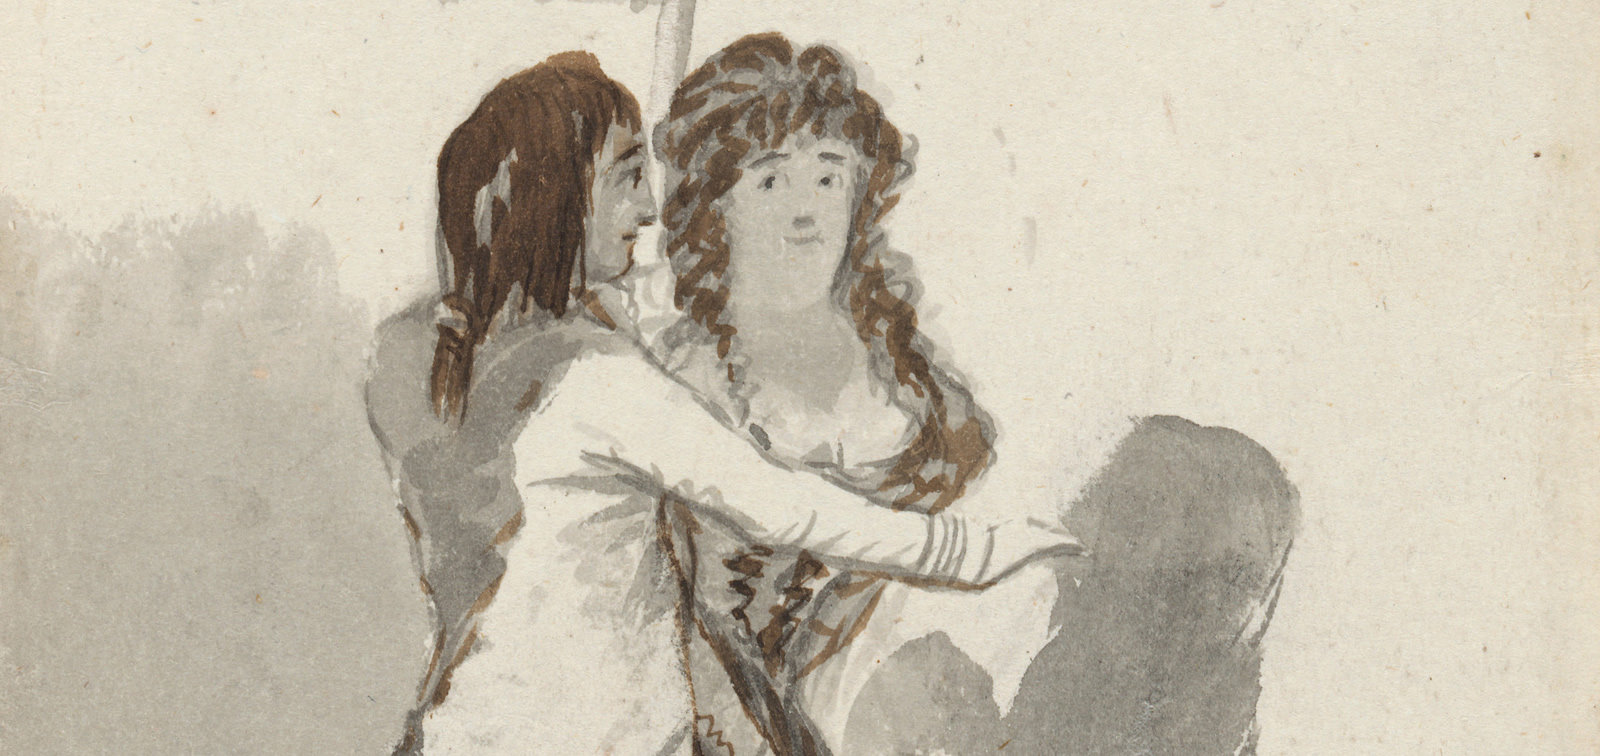 Dibujos españoles en la Hamburger Kunsthalle: Cano, Murillo y Goya